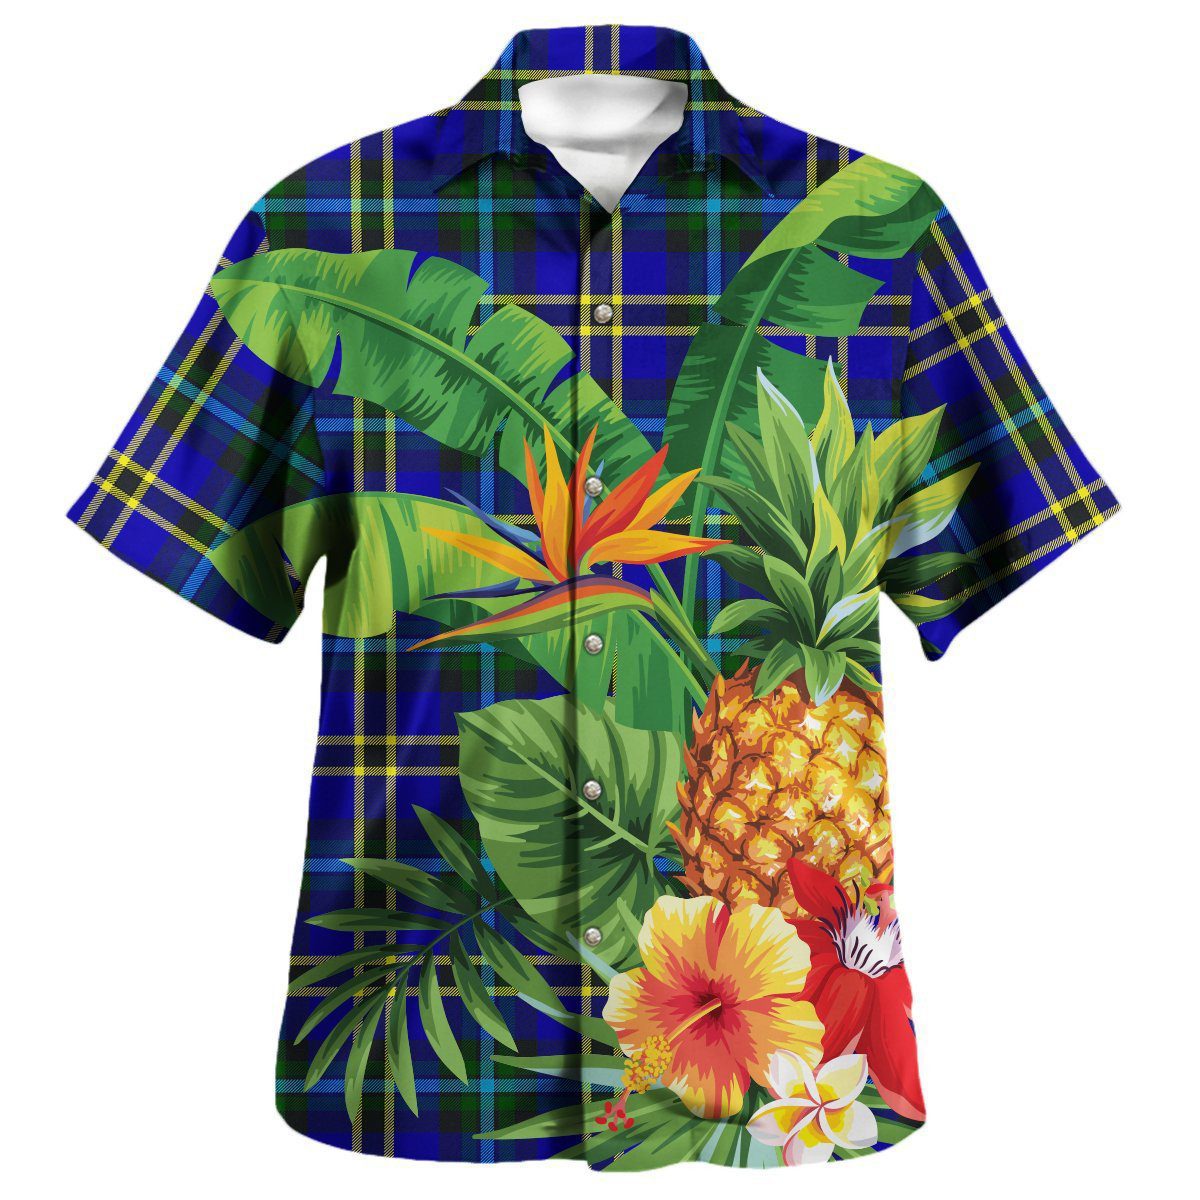 Weir Modern Tartan Aloha Shirt version 2